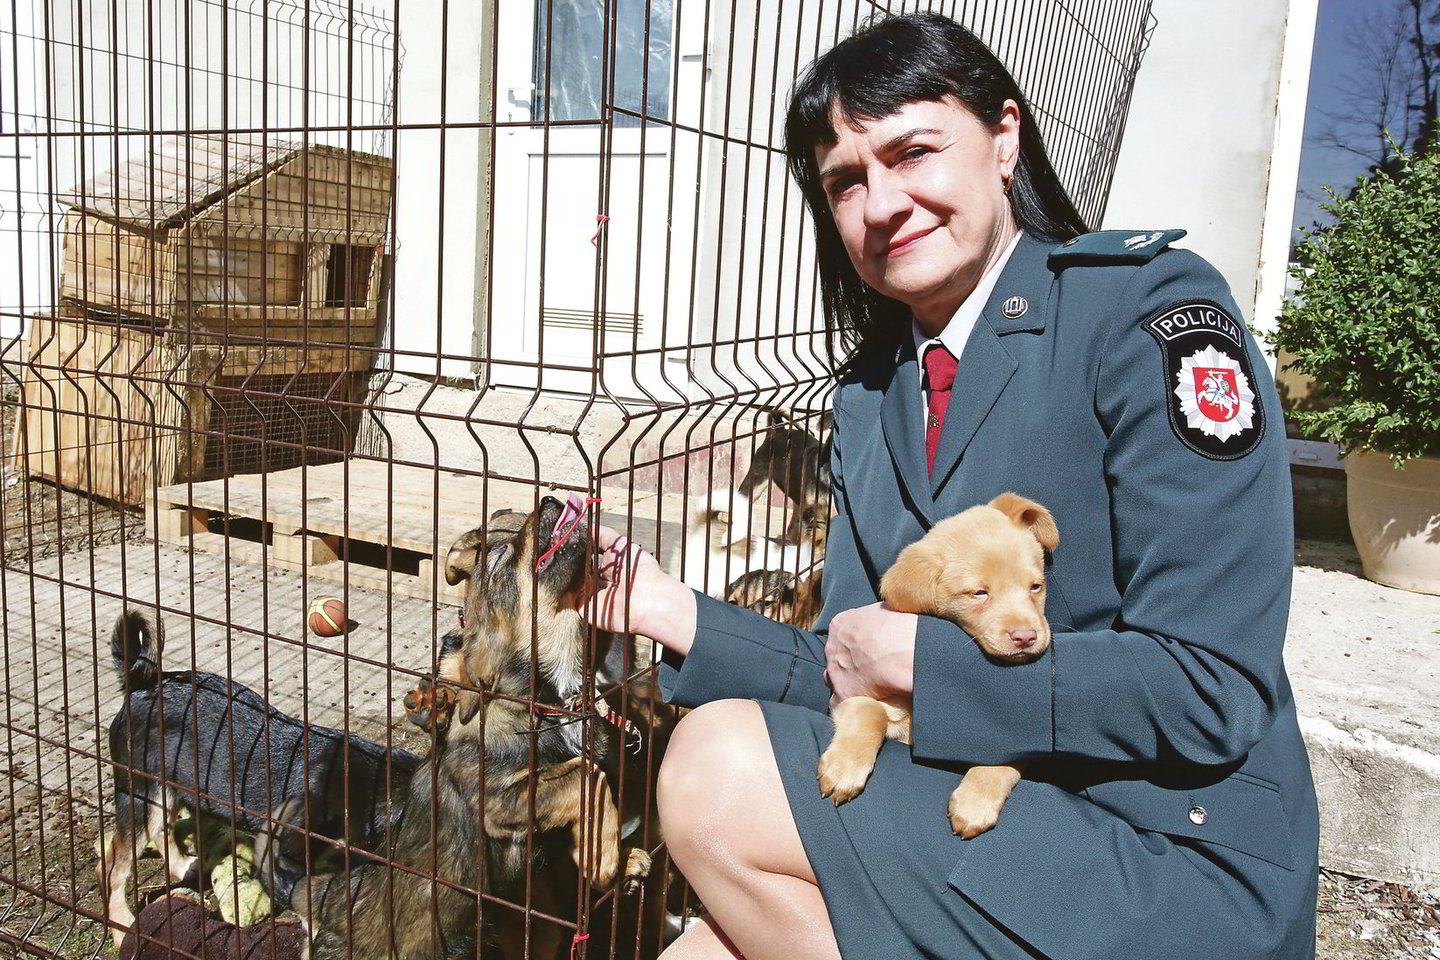 Sunkius nusikaltimus tirianti A.Gecevičienė laisvu laiku lanko gyvūnų prieglaudą ir rūpinasi beglobiais šunimis. Ji ne vienam keturkojui padėjo rasti namus.<br>M.Patašiaus nuotr.